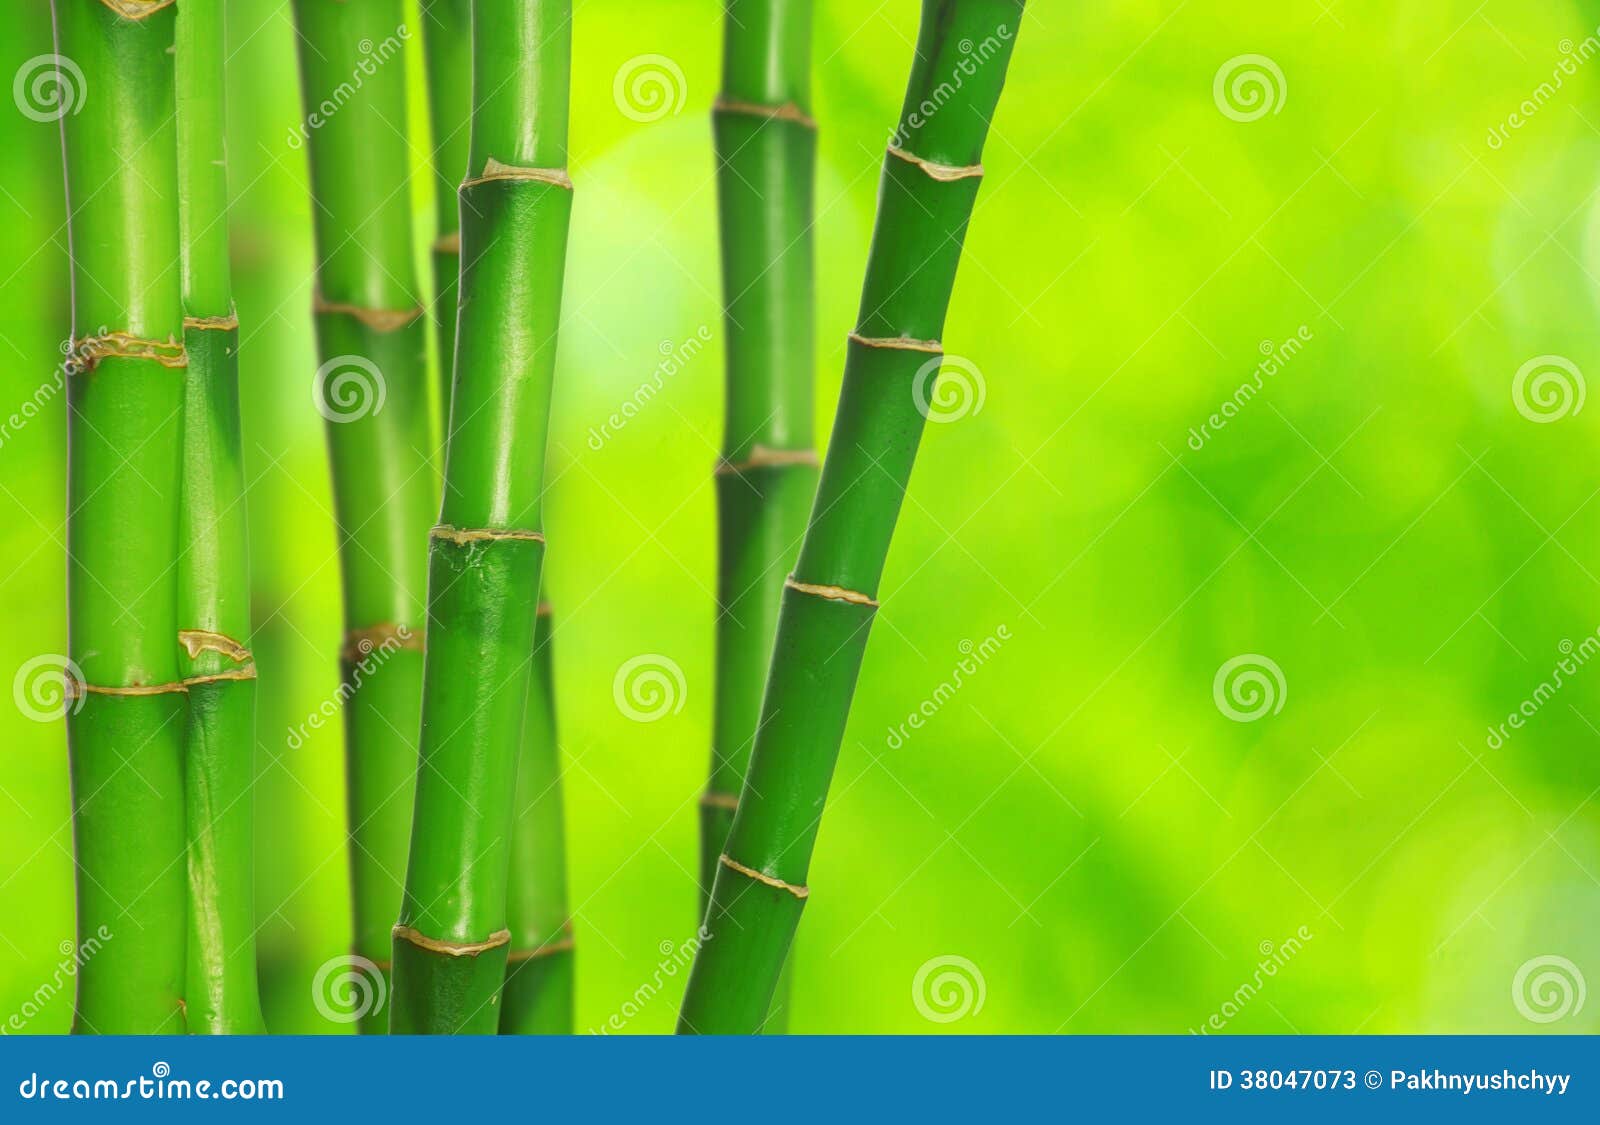 land Maak avondeten onpeilbaar Groen bamboe stock afbeelding. Image of geïsoleerd, steel - 38047073